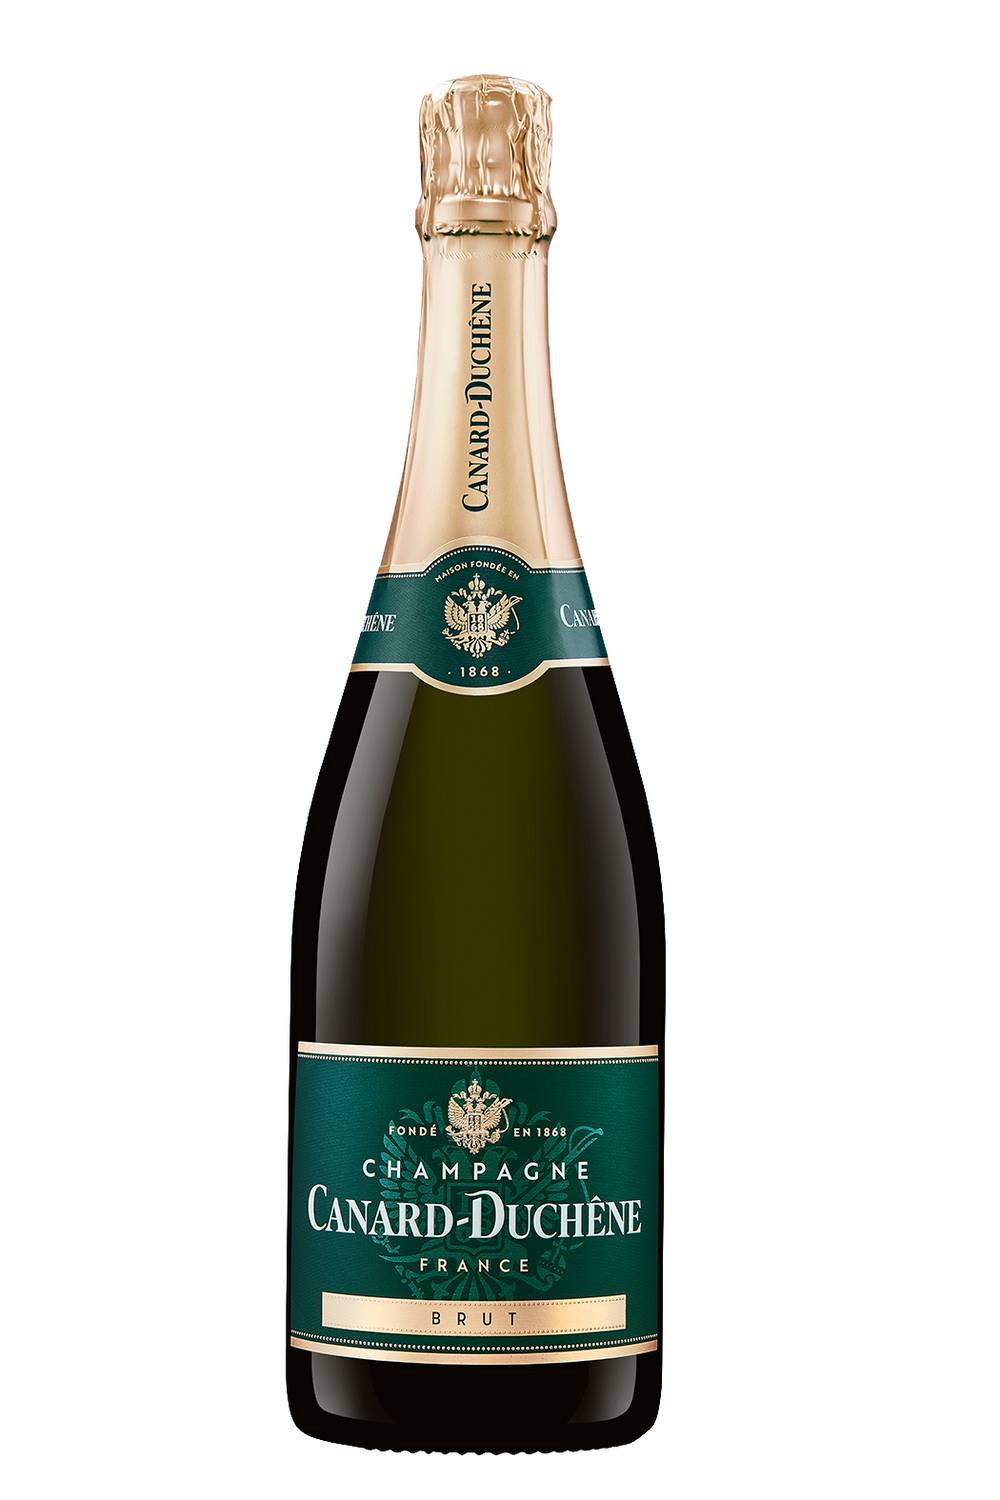 Canard-Duchêne - Canard duchêne champagne blanc chardonnay brut